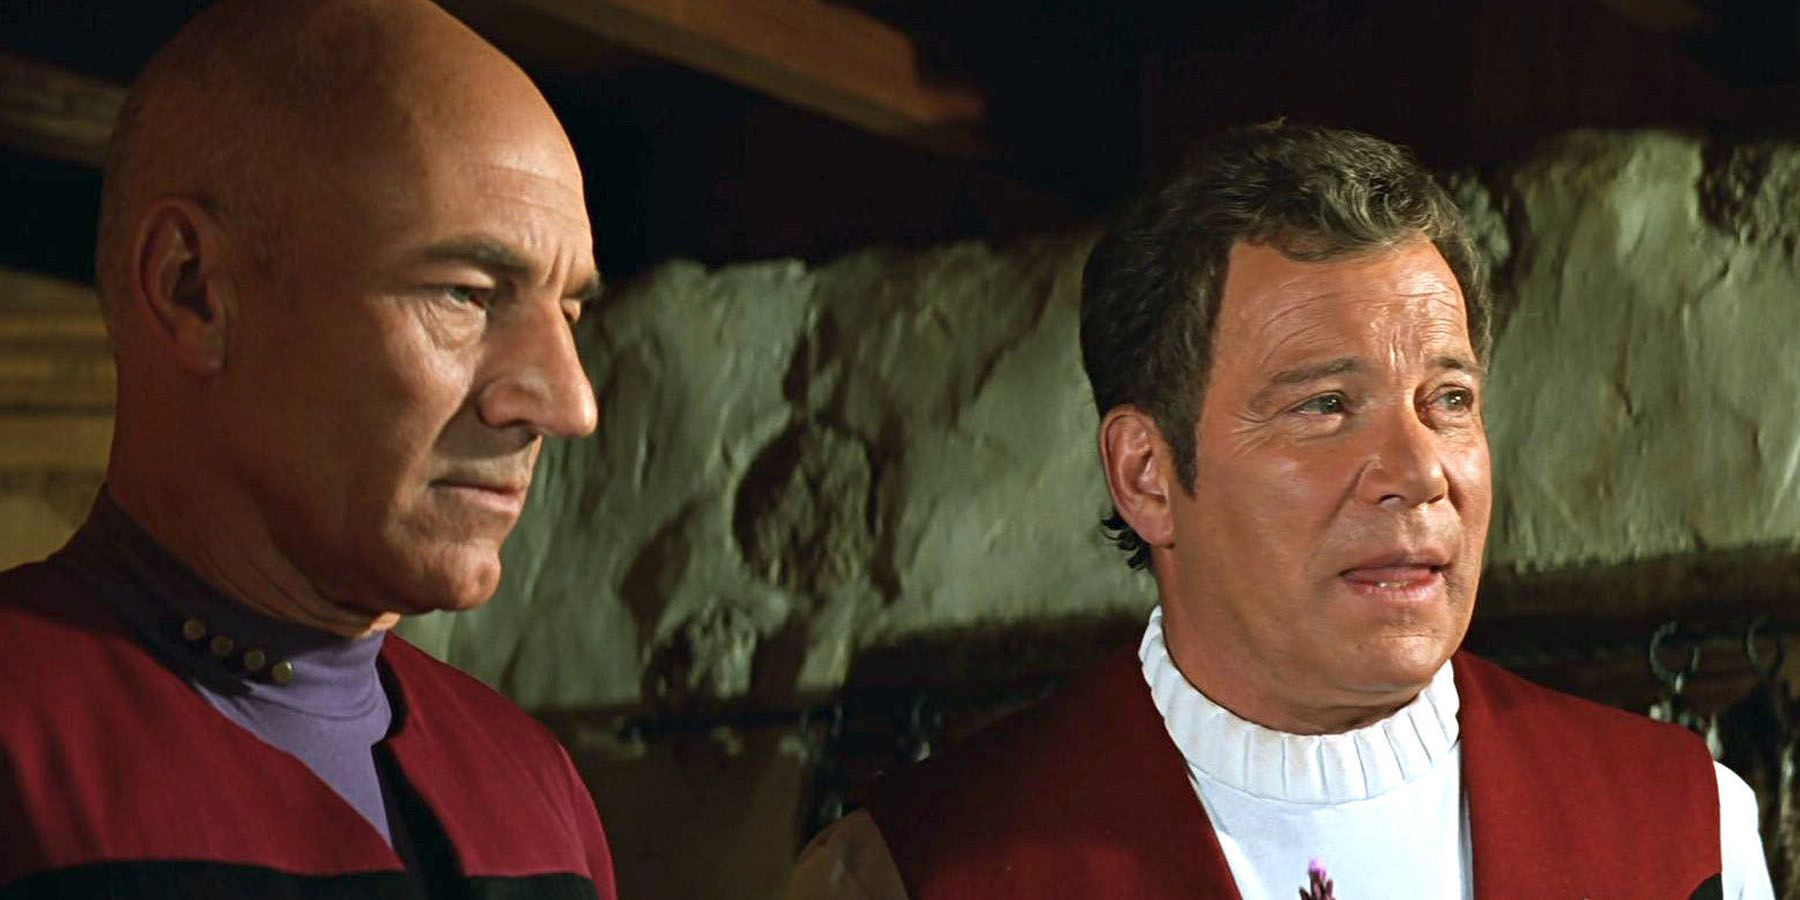 Picard meets Kirk